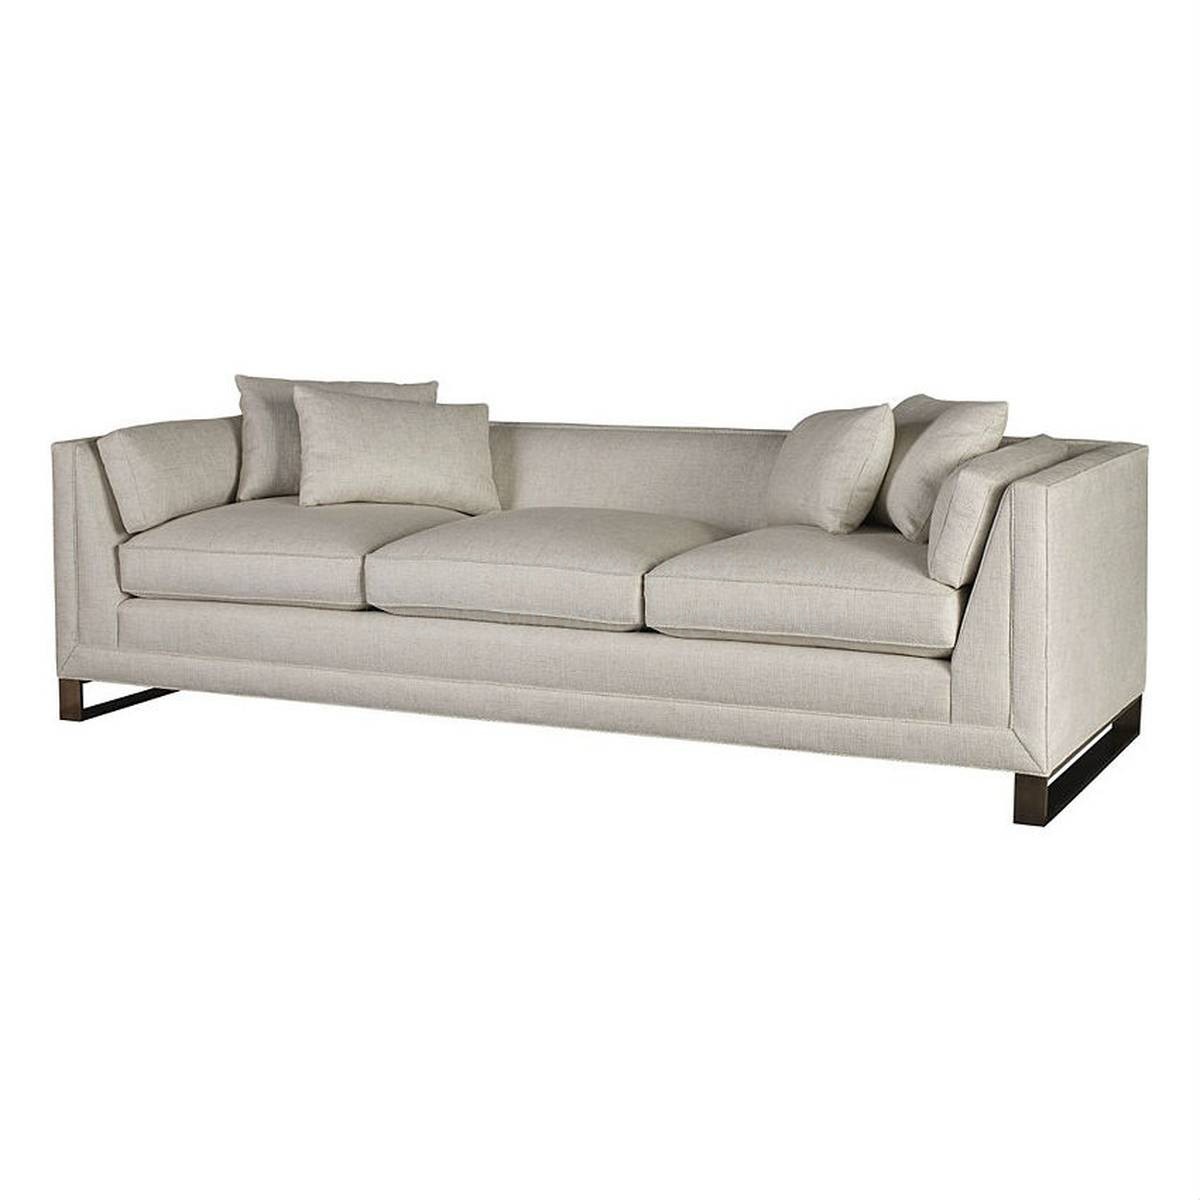 Прямой диван Surround sofa из США фабрики BAKER